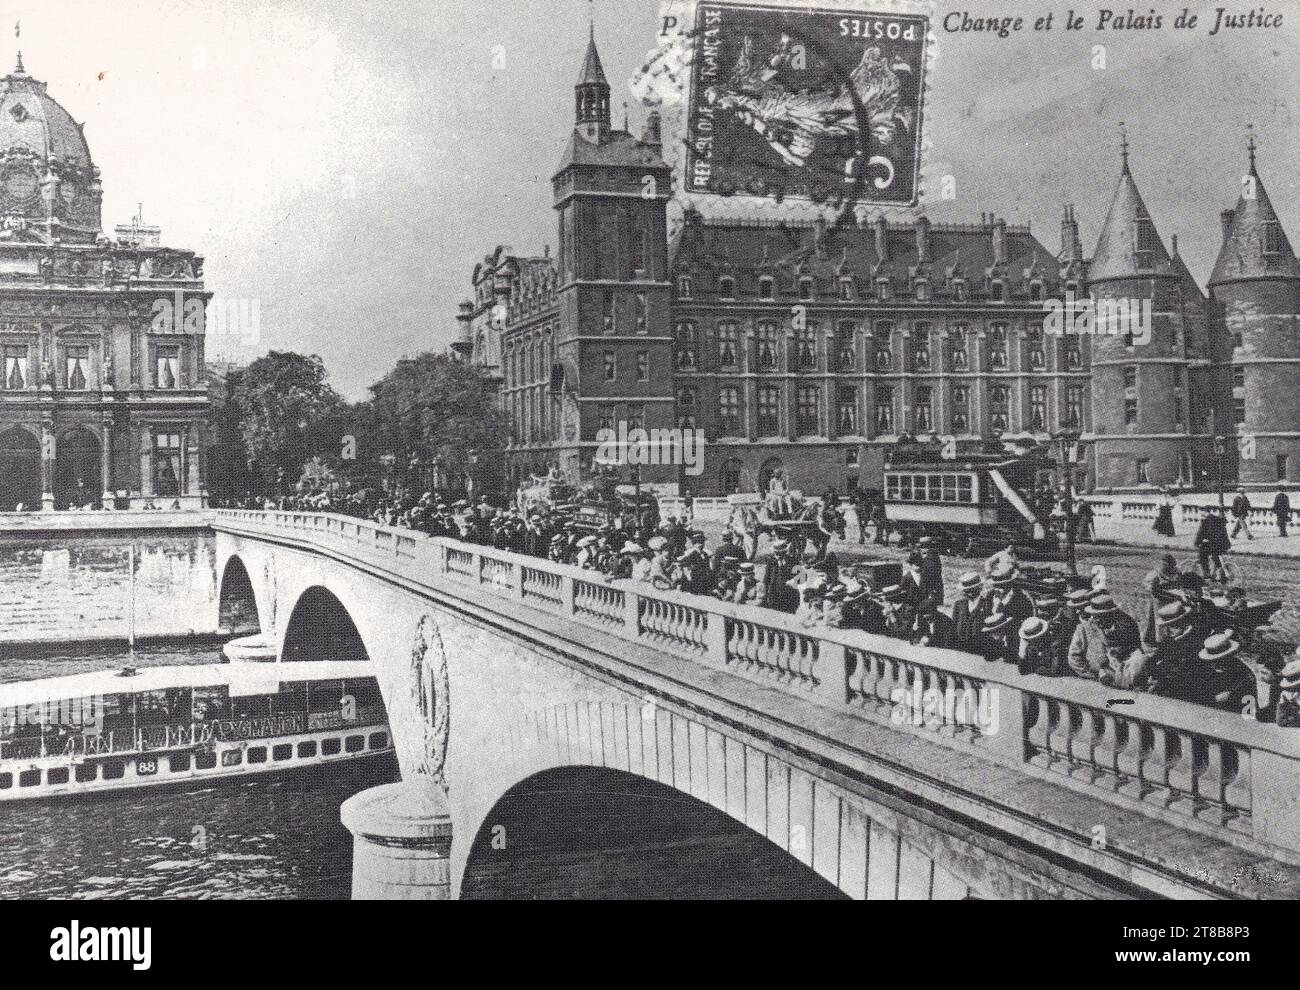 Change et le Palais de Justice, Parigi 1900S.. Foto Stock